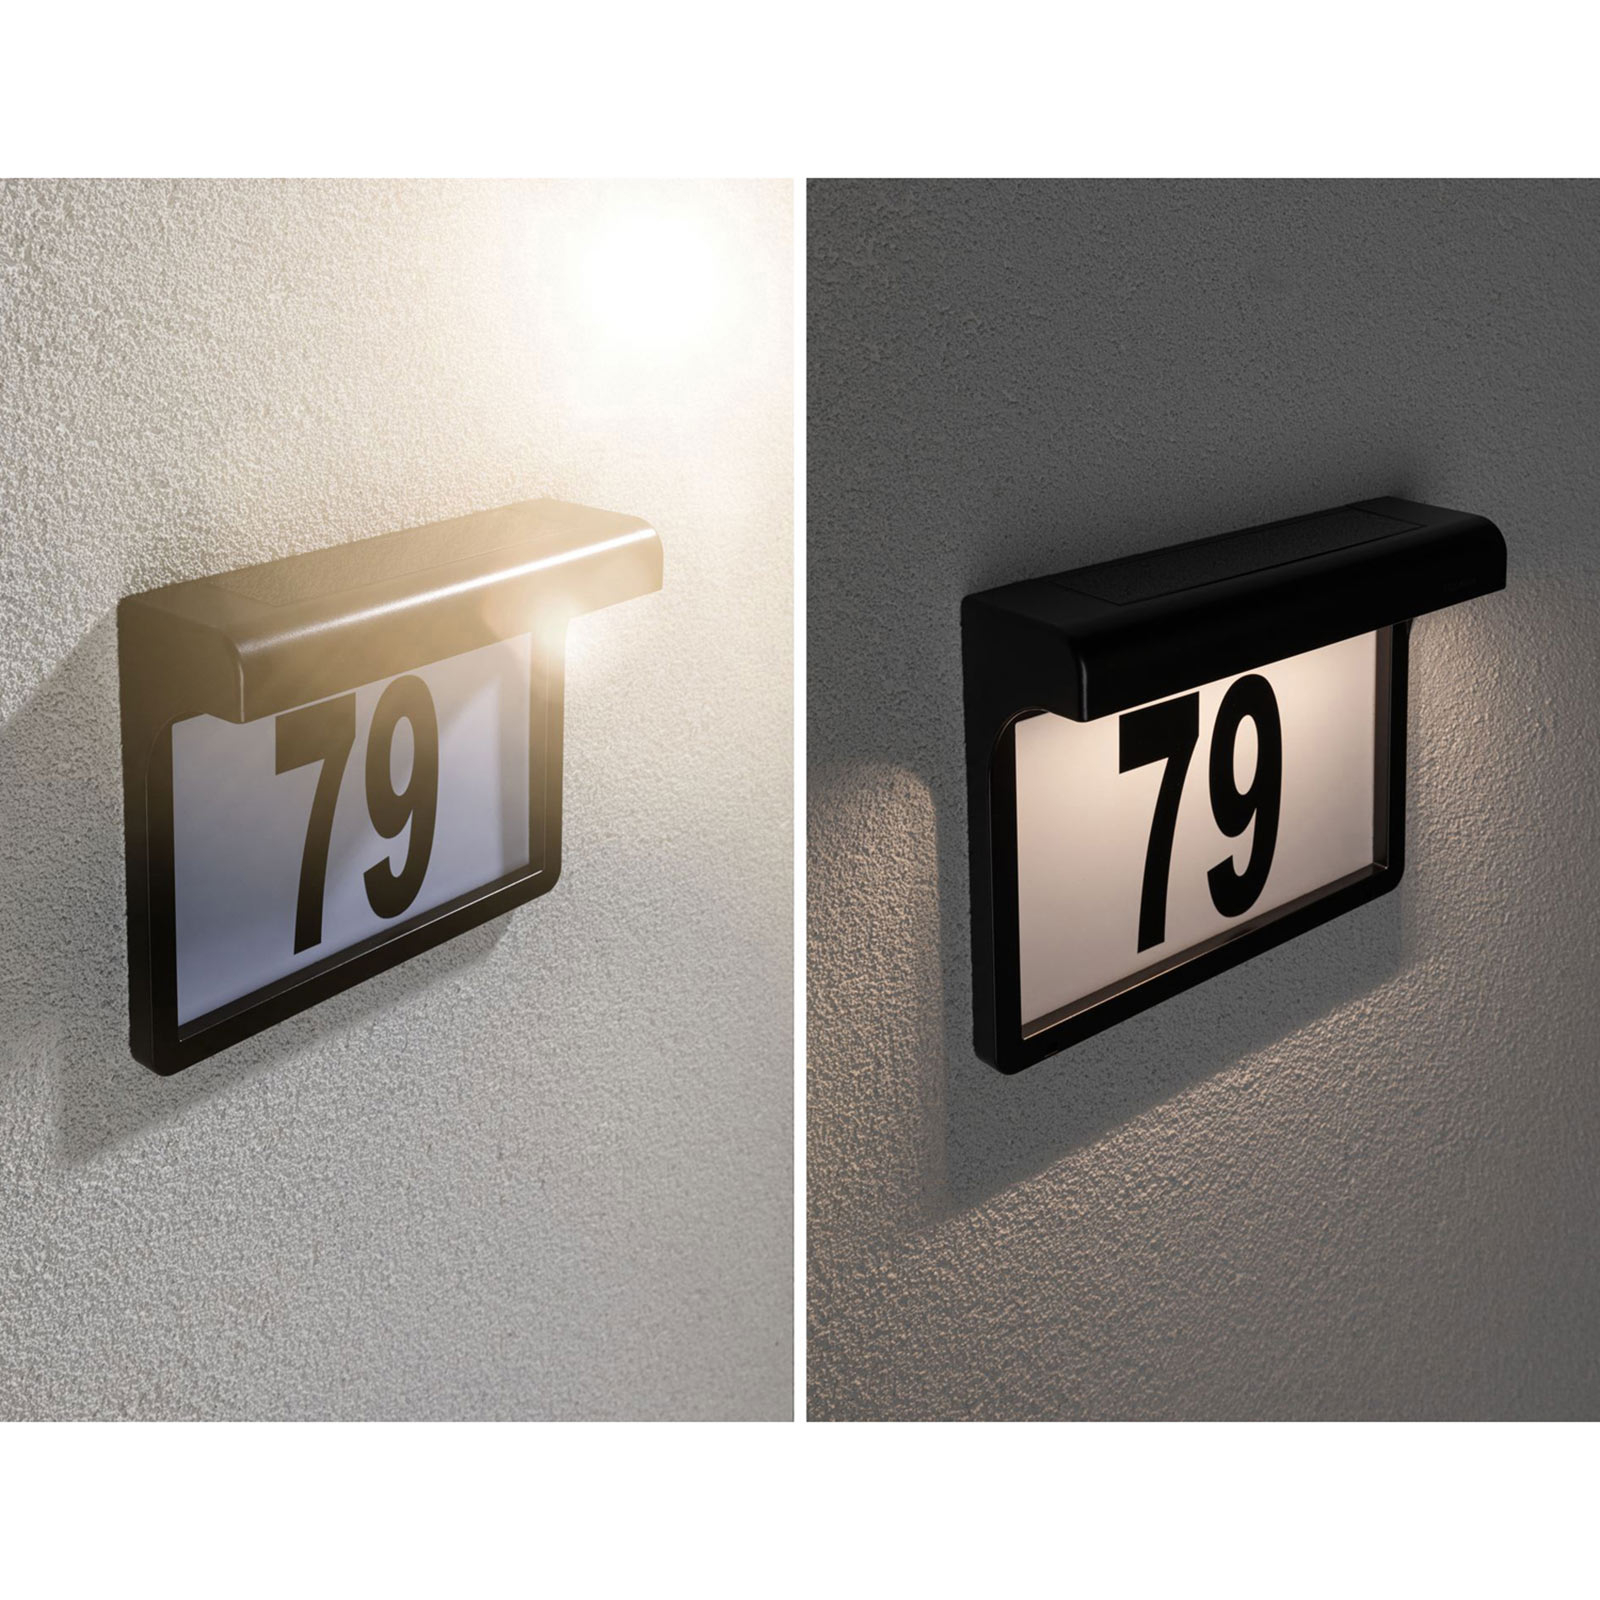 Dayton LED solar-huisnummer lamp | Lampen24.be